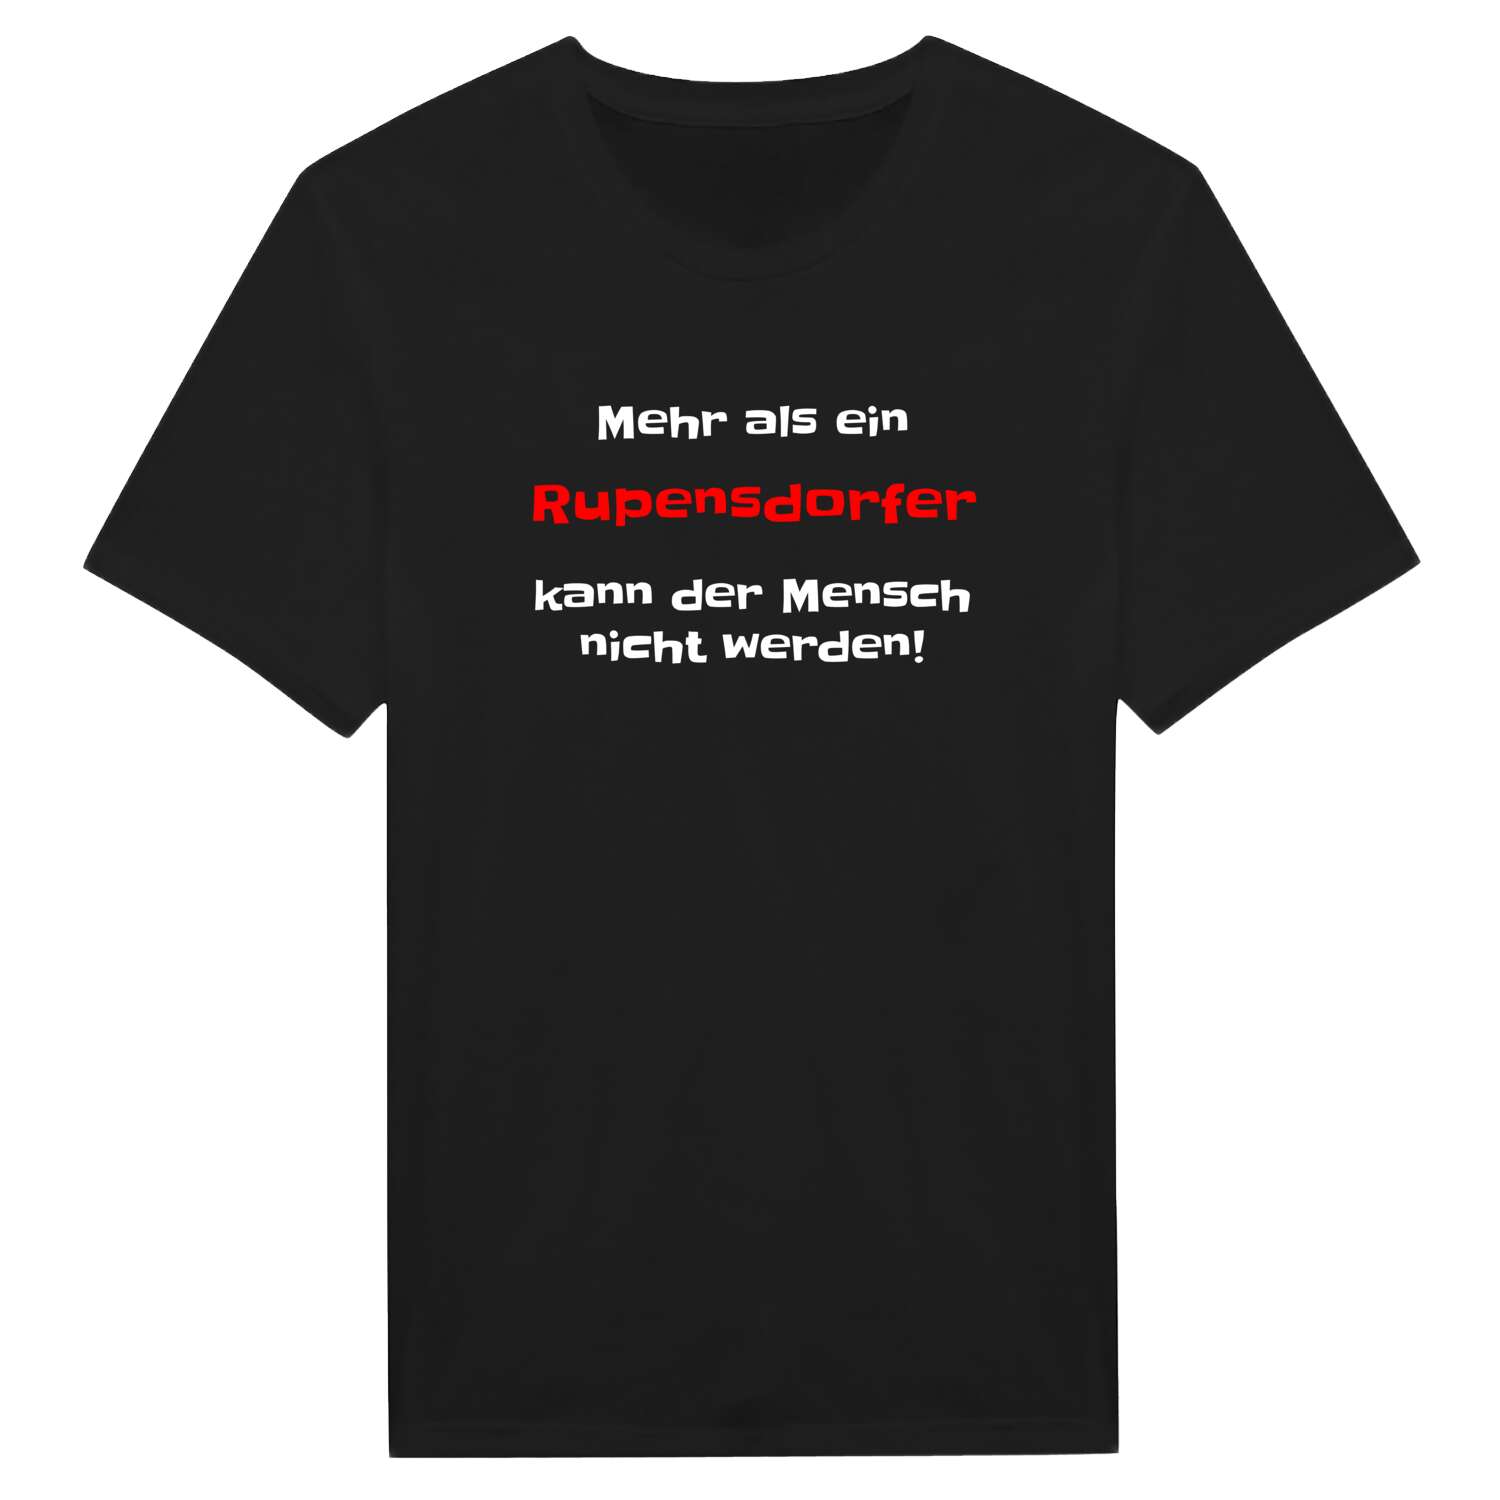 Rupensdorf T-Shirt »Mehr als ein«